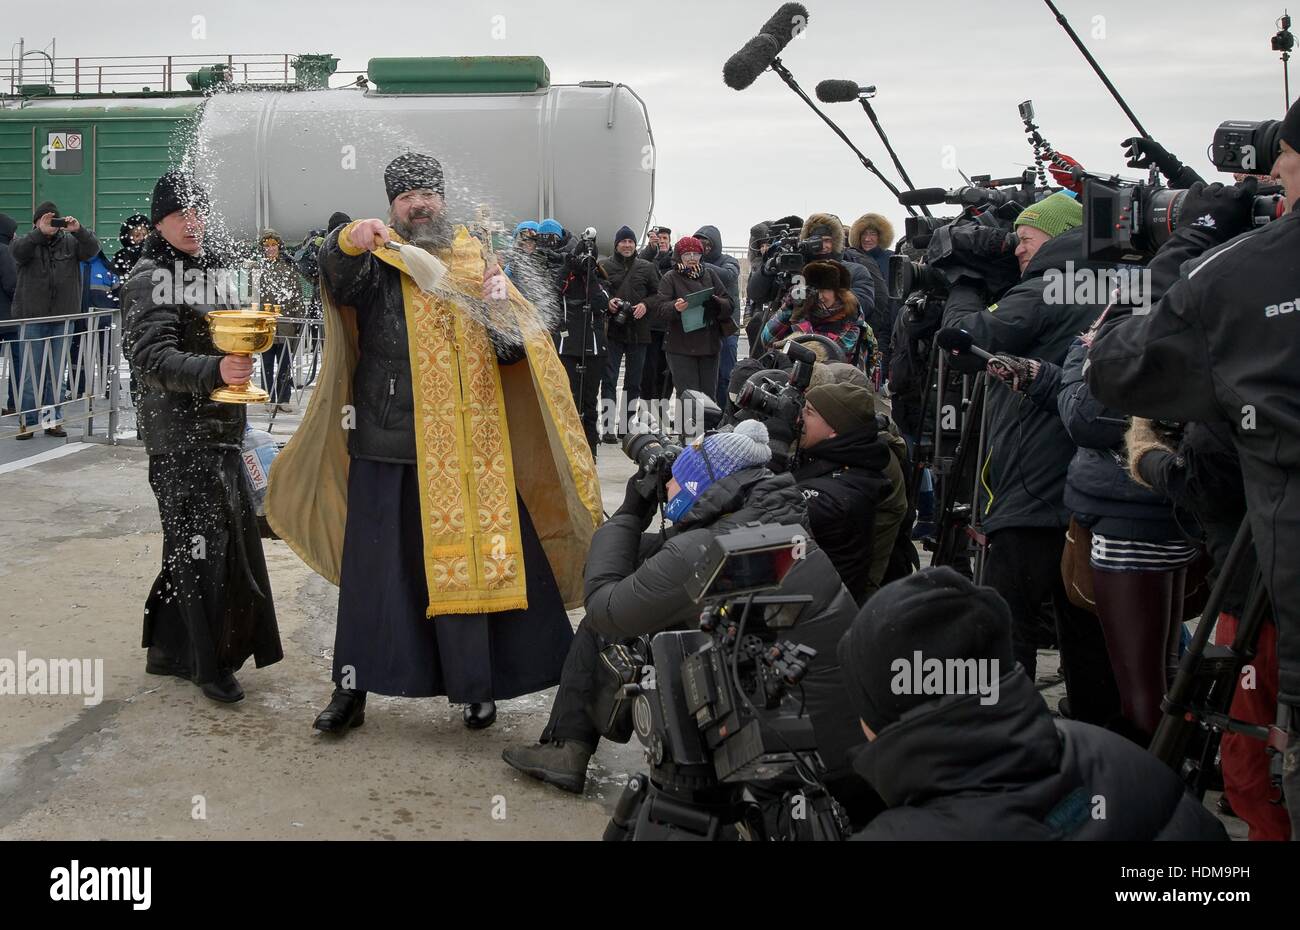 Un sacerdote ortodoxo ruso, bendice a los miembros de los medios de comunicación después de la bendición del cohete Soyuz MS-03 nave en preparación para la expedición de la Estación Espacial Internacional de la NASA misión 50 lanzamiento en el cosmódromo de Baikonur, 16 de noviembre de 2016 en Baikonur, Kazajstán. Foto de stock